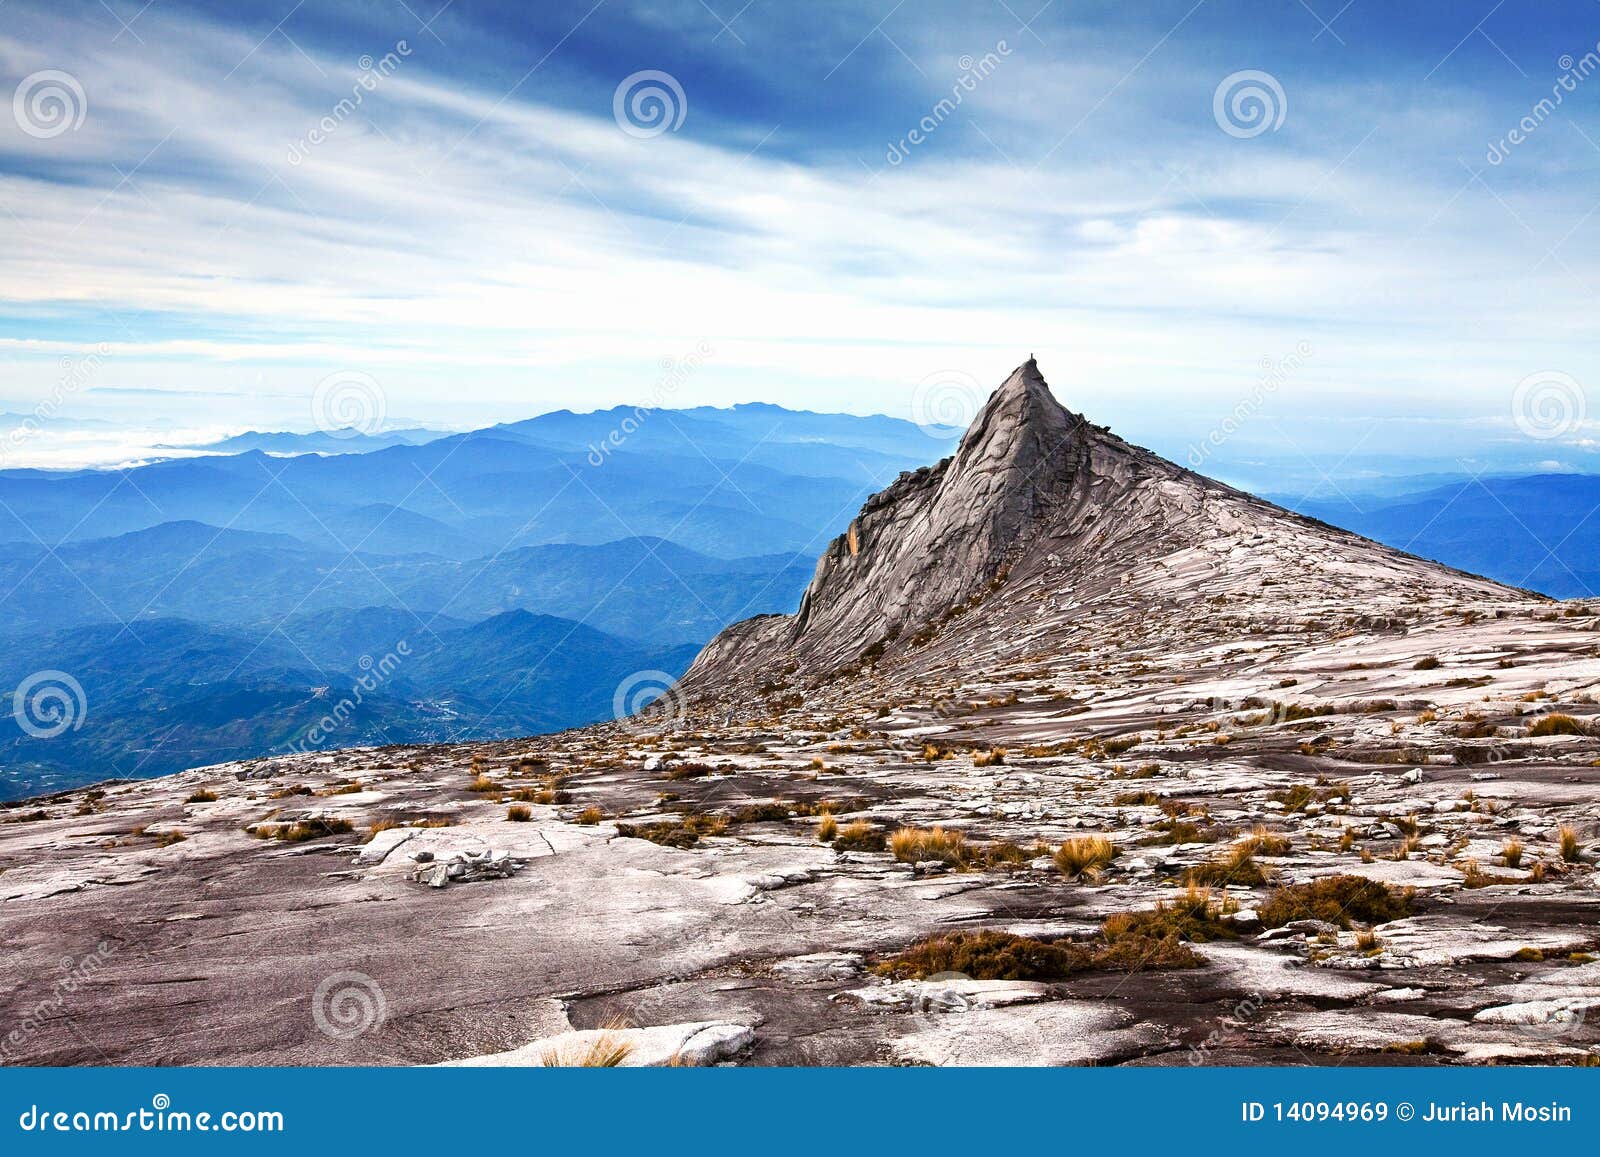 summit of mt kinabalu, asia's highest mountain